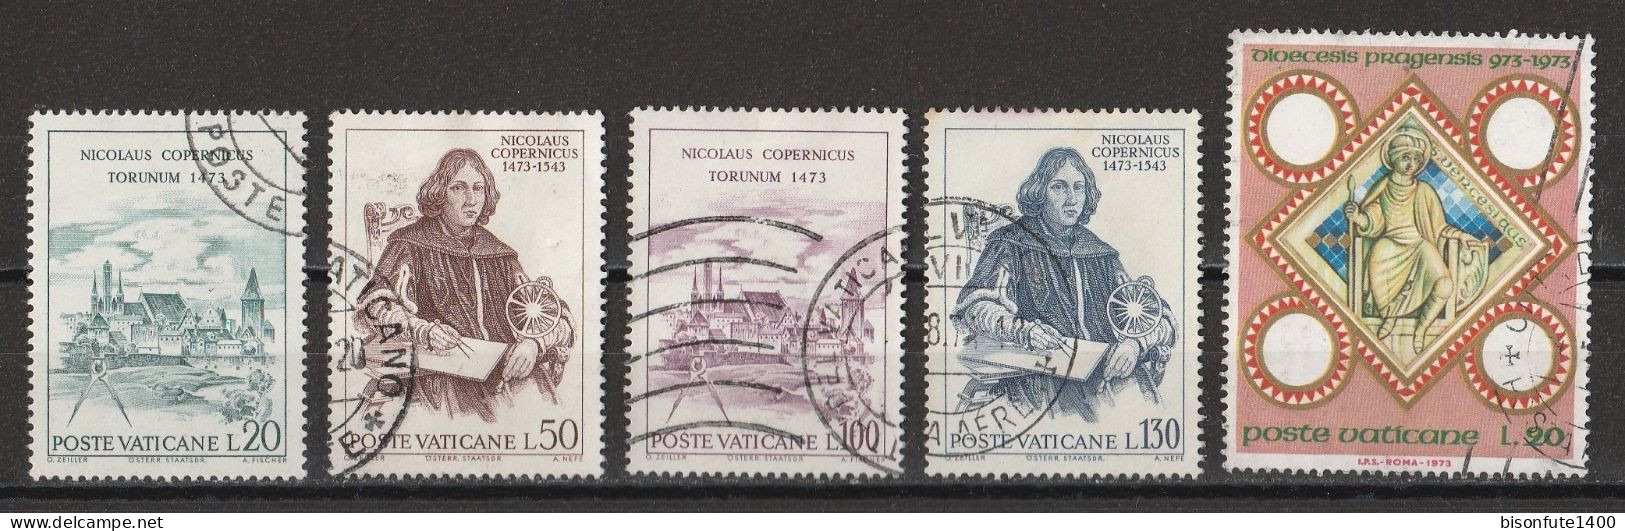 Vatican 1973 : Timbres Yvert & Tellier N° 552 - 553 - 554 - 555 - 556 - 557 - 558 - 559 - 560 - 561 - 562 - 563 - 564... - Oblitérés